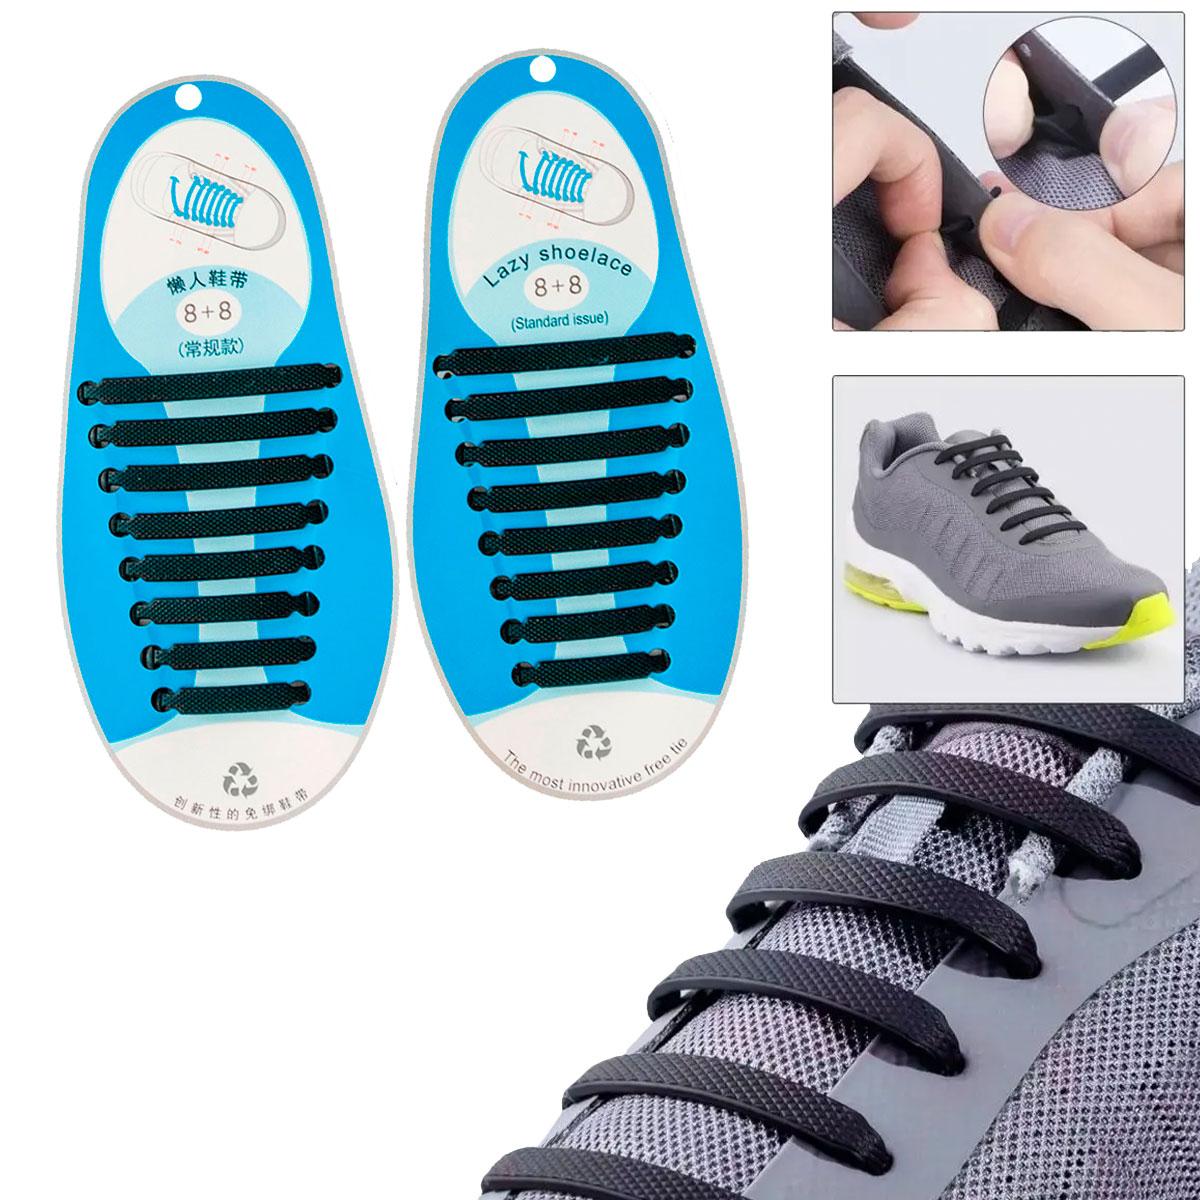 Силіконові шнурки для кросівок Чорні (компл. 8шт+8шт) антишнурки, еластичні шнурки без зав'язок